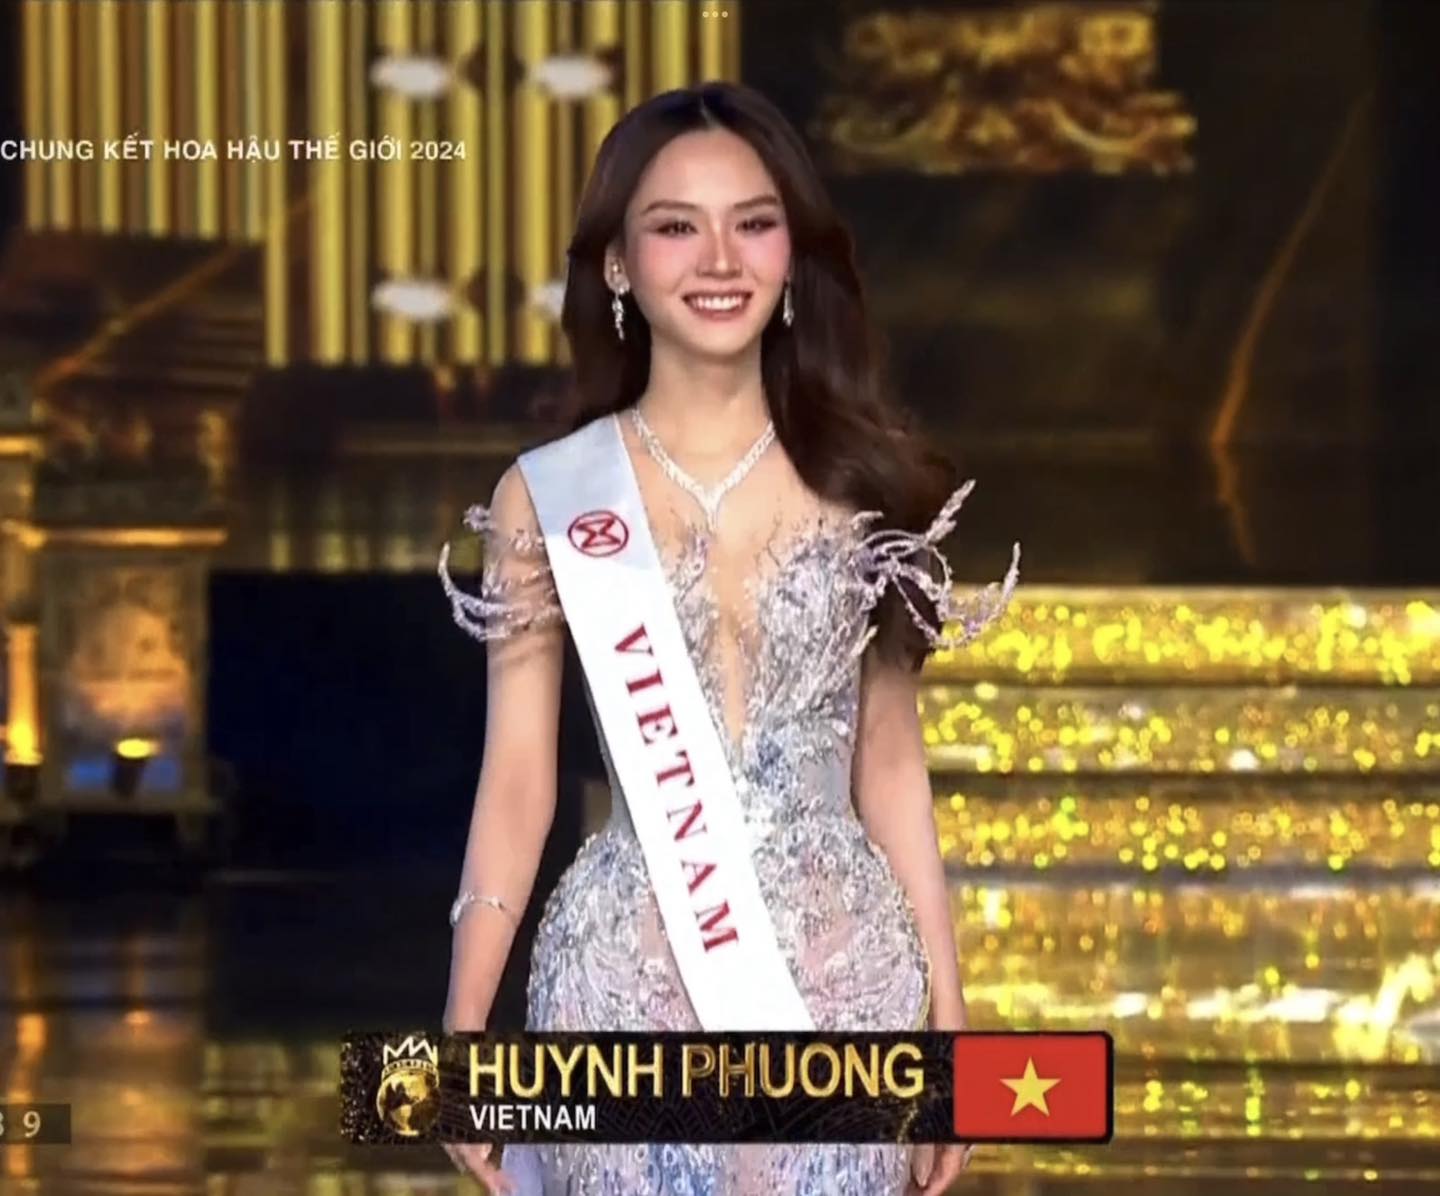 Miss World 2023 chèn ép Việt Nam thấy rõ trong đêm chung kết, fan bức xúc đòi công bằng cho Mai Phương - ảnh 2